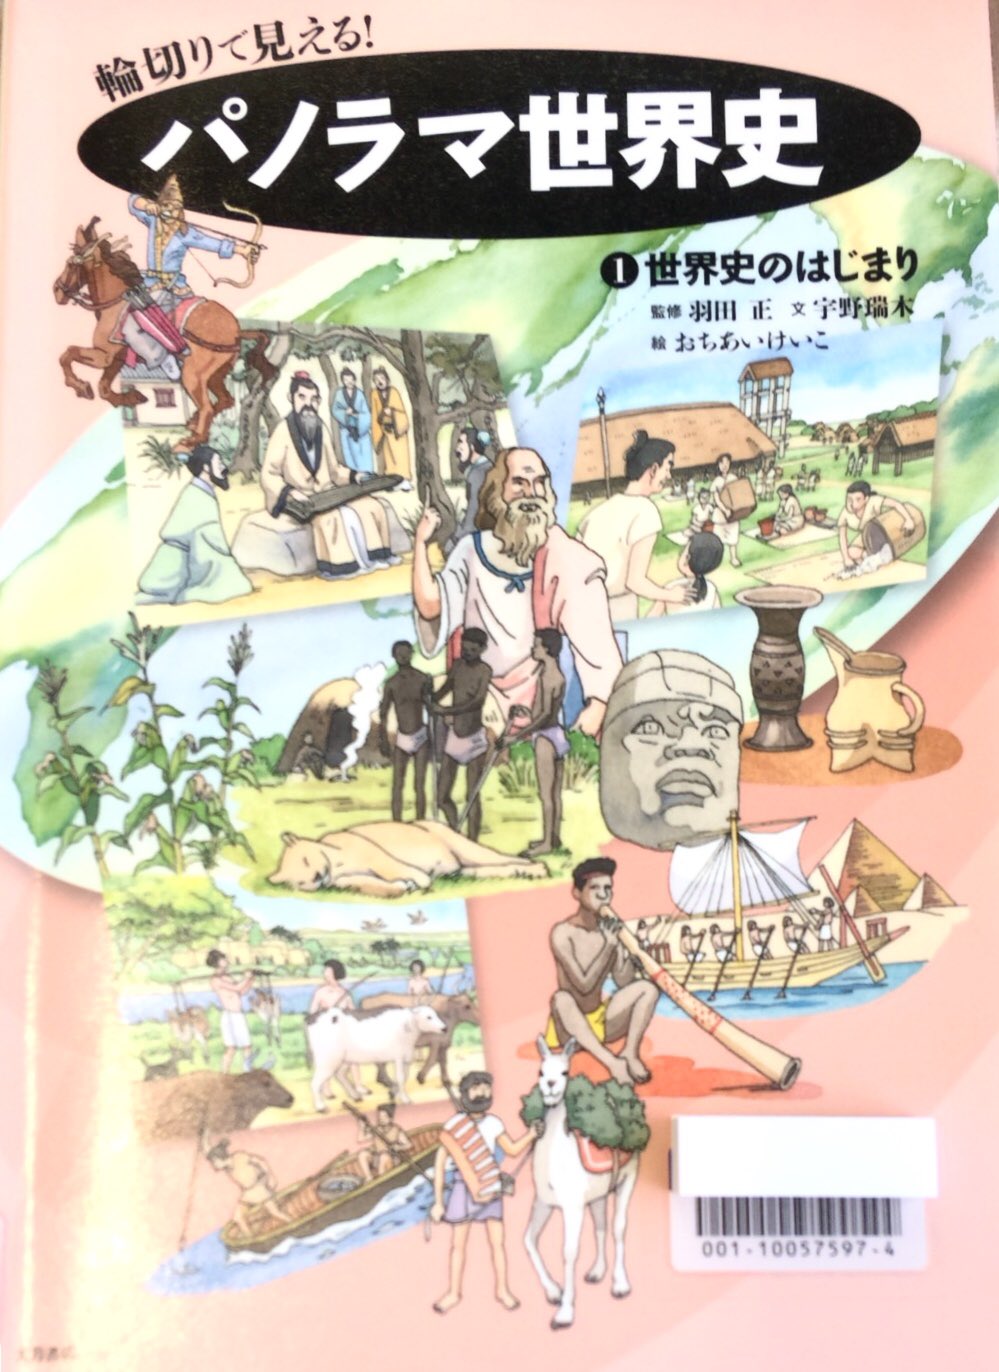 世界史ノート 山さん A Twitter 児童図書 パノラマ世界史 横の世界史を地図とイラストで説明されているので視覚的にイメージしやすかった 世界史